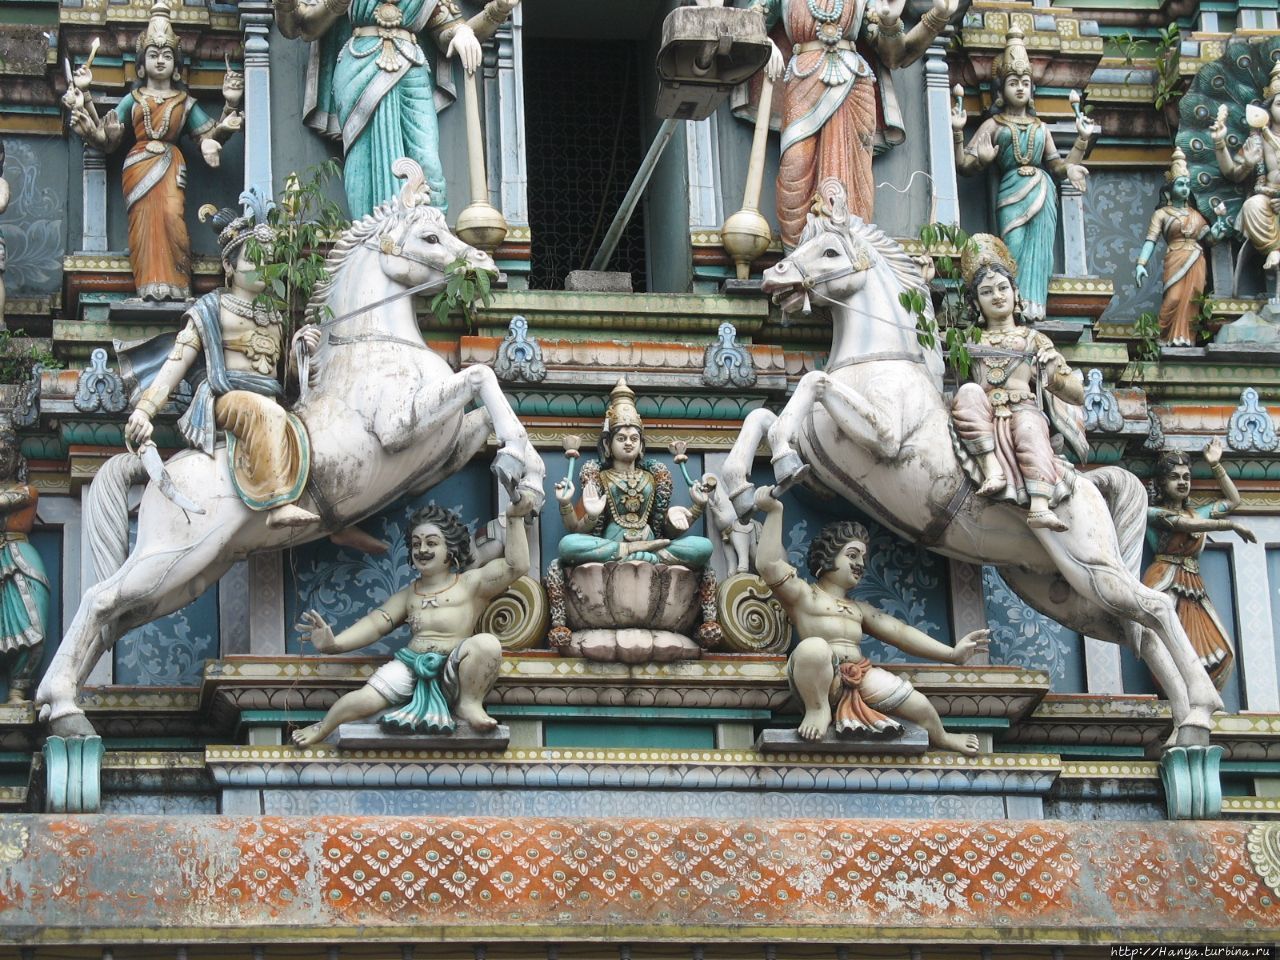 Храм Шри Махамариамман. Гопура Куала-Лумпур, Малайзия